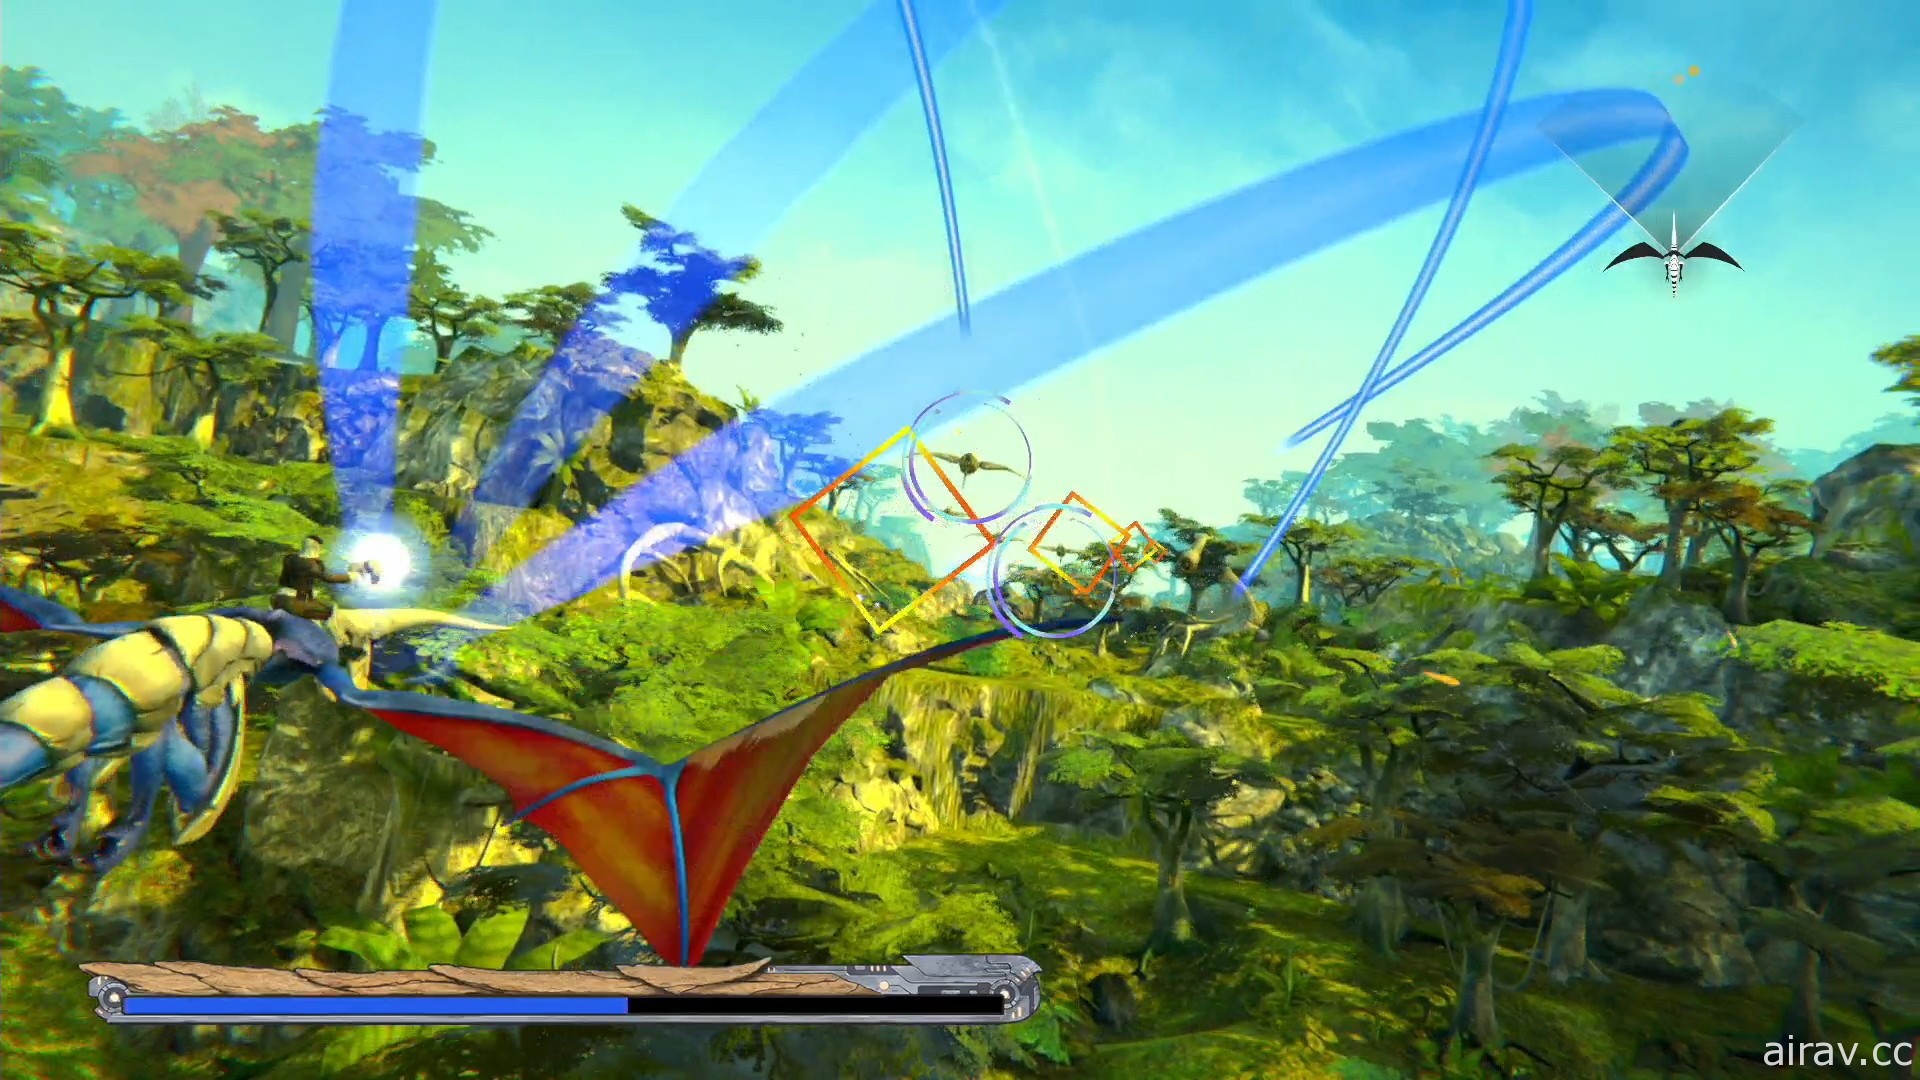 《飛龍騎士 重製版》將於年底在 PS4、Xbox One 與 PC 平台推出